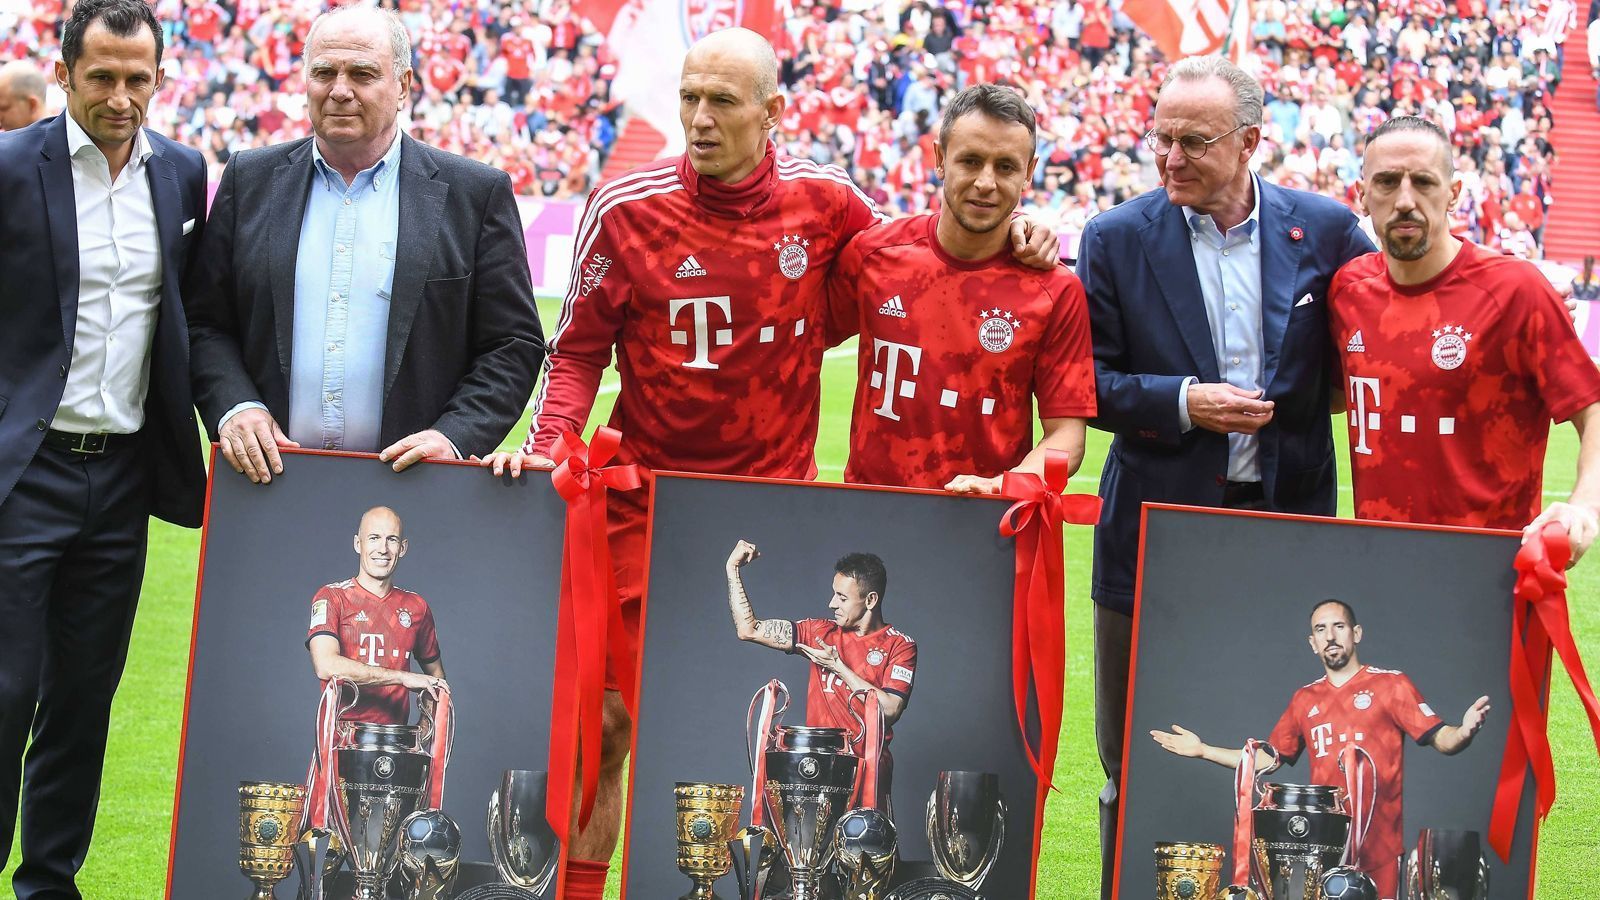 
                <strong>Bayern verabschiedet Robben, Rafinha und Ribery</strong><br>
                Schon vor dem Spiel gibt es den ersten emotionalen Moment: Der FC Bayern verabschiedet Arjen Robben, Rafinha und Franck Ribery (von links nach rechts). Gerade das Duo "Robbery" hat beim Rekordmeister absoluten Legenden-Status.
              